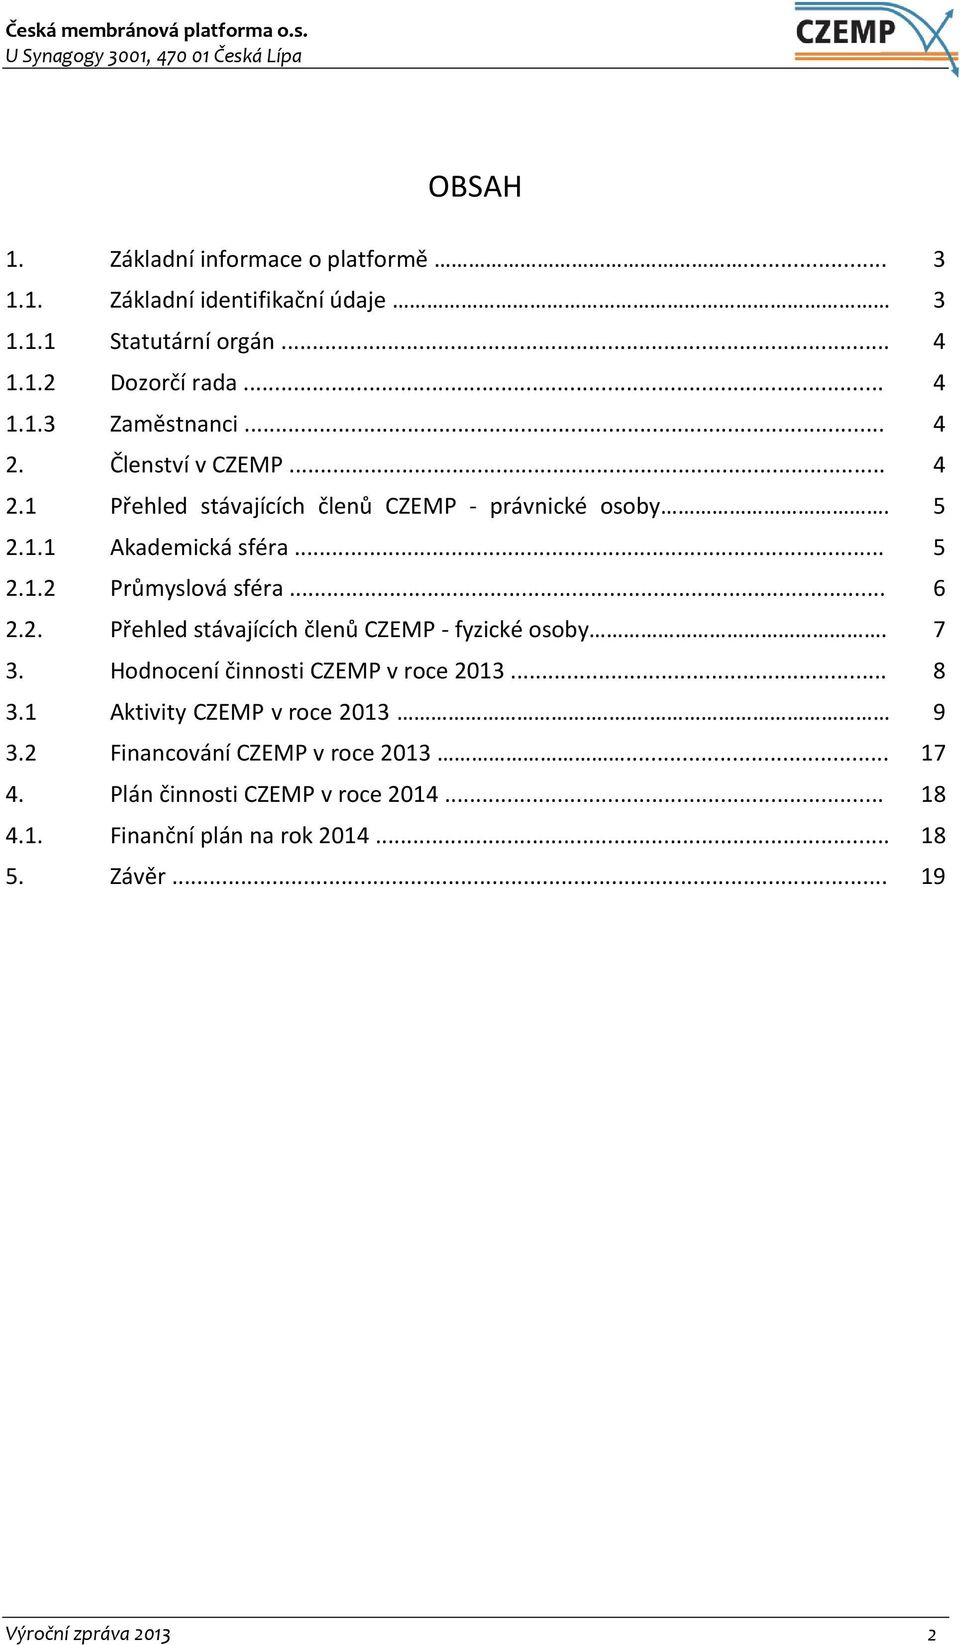 2. Přehled stávajících členů CZEMP - fyzické osoby. 7 3. Hodnocení činnosti CZEMP v roce 2013... 8 3.1 Aktivity CZEMP v roce 2013.. 9 3.